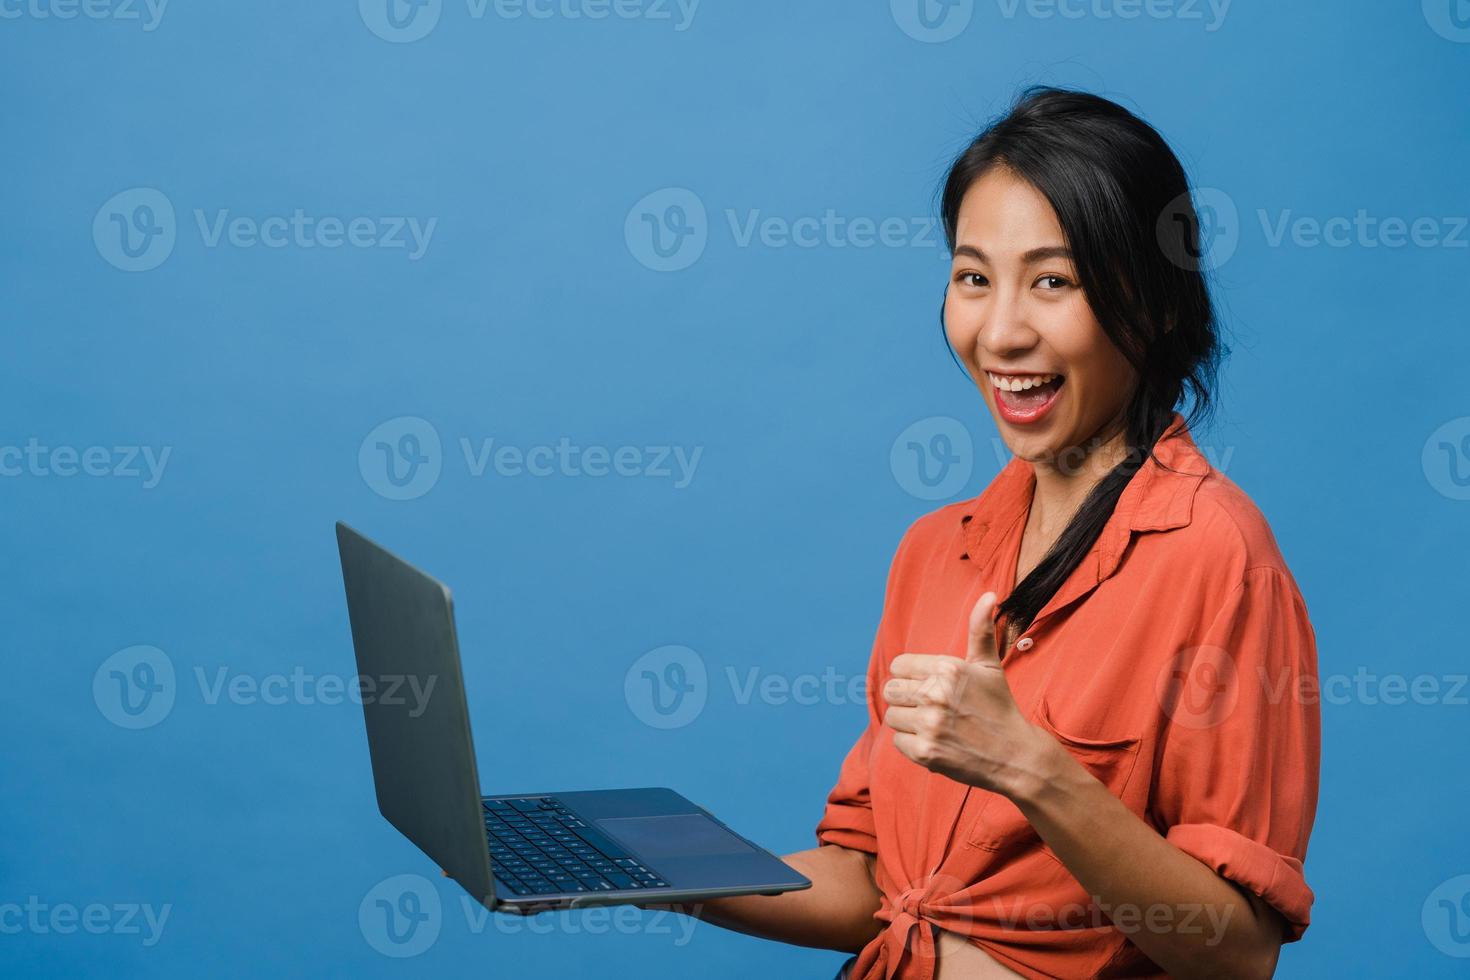 jeune femme asiatique utilisant un ordinateur portable avec une expression positive, sourit largement, vêtue de vêtements décontractés, se sentant heureuse et isolée sur fond bleu. heureuse adorable femme heureuse se réjouit du succès. photo